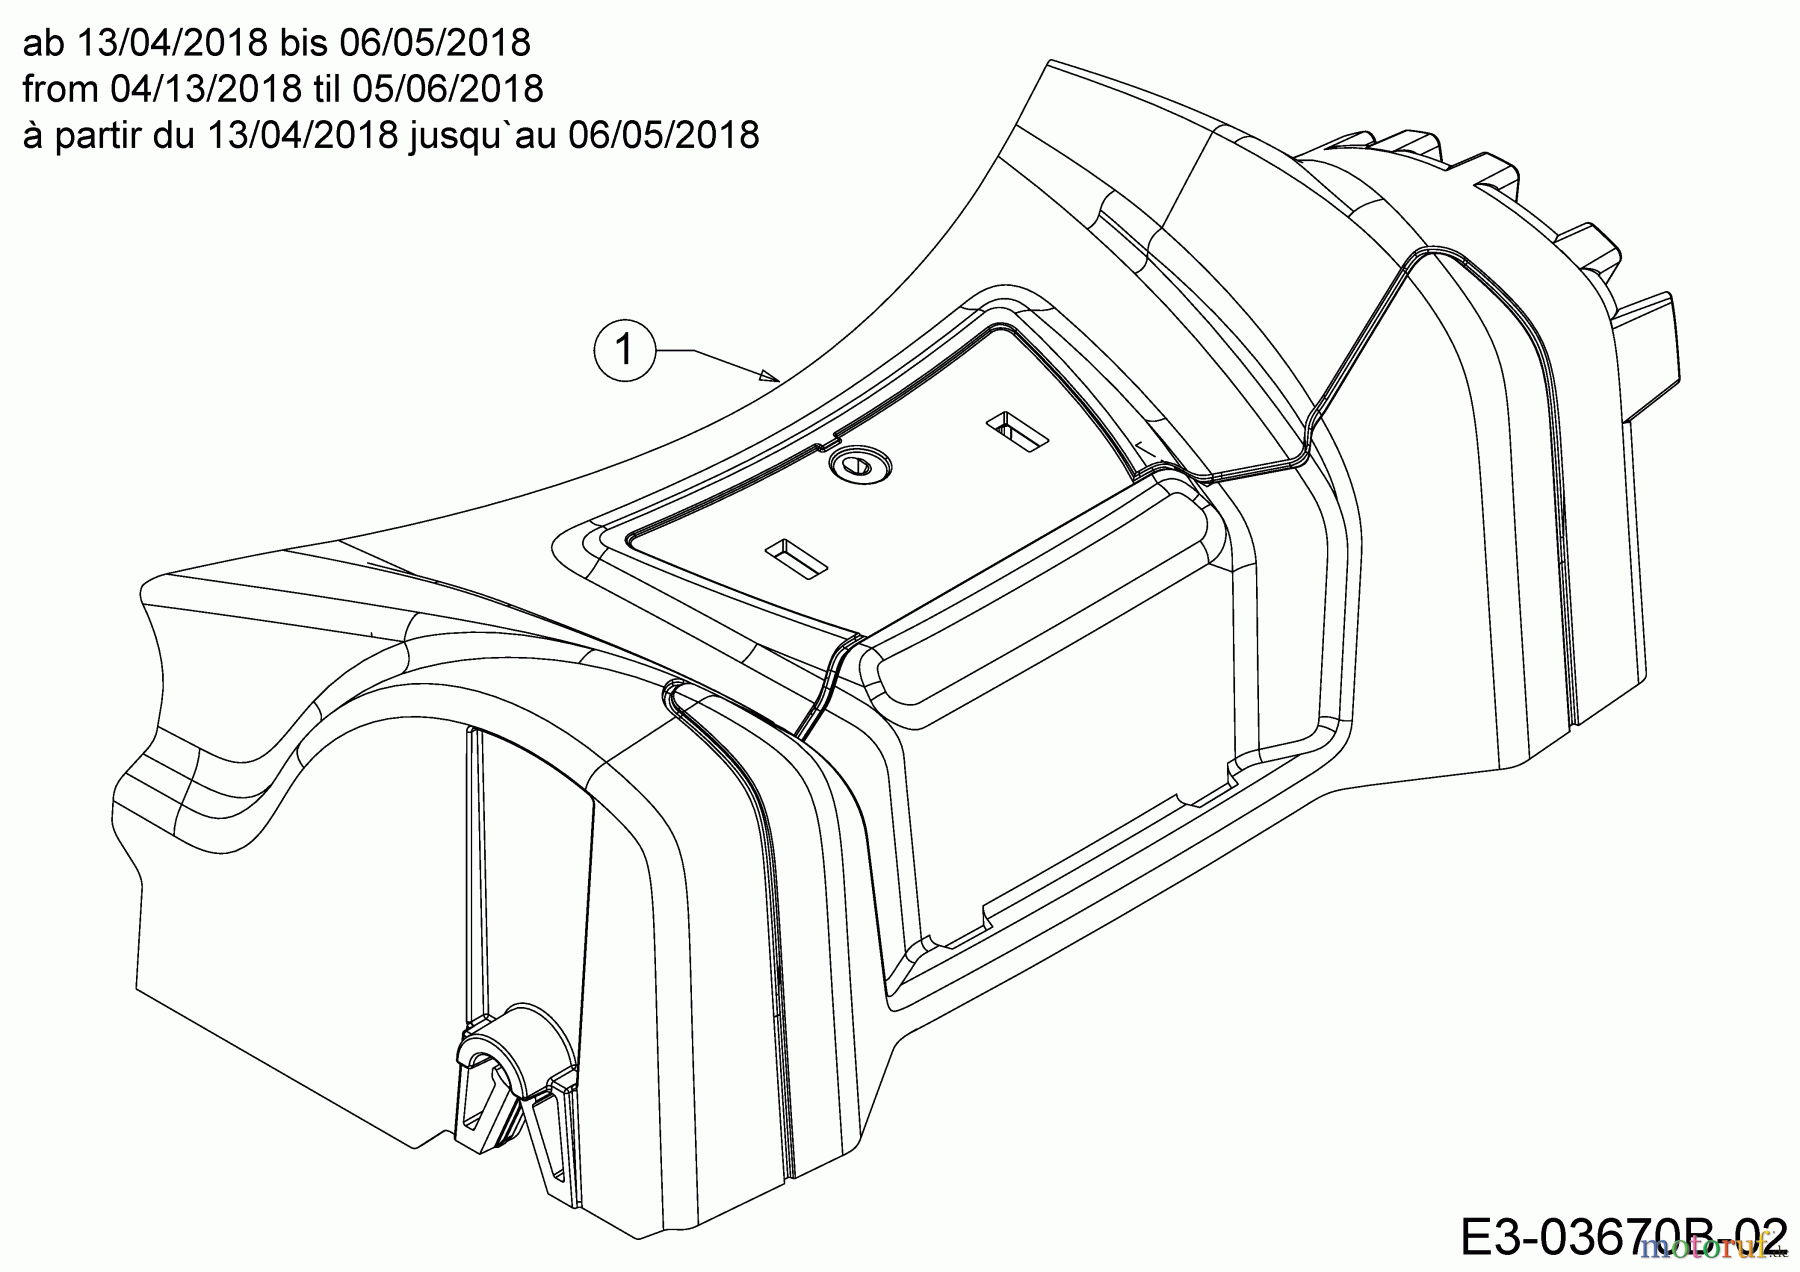  MTD Motormäher mit Antrieb Smart 46 SPBS 12B-TY5B600  (2018) Abdeckung Vorderachse ab 13/04/2018 bis 06/05/2018